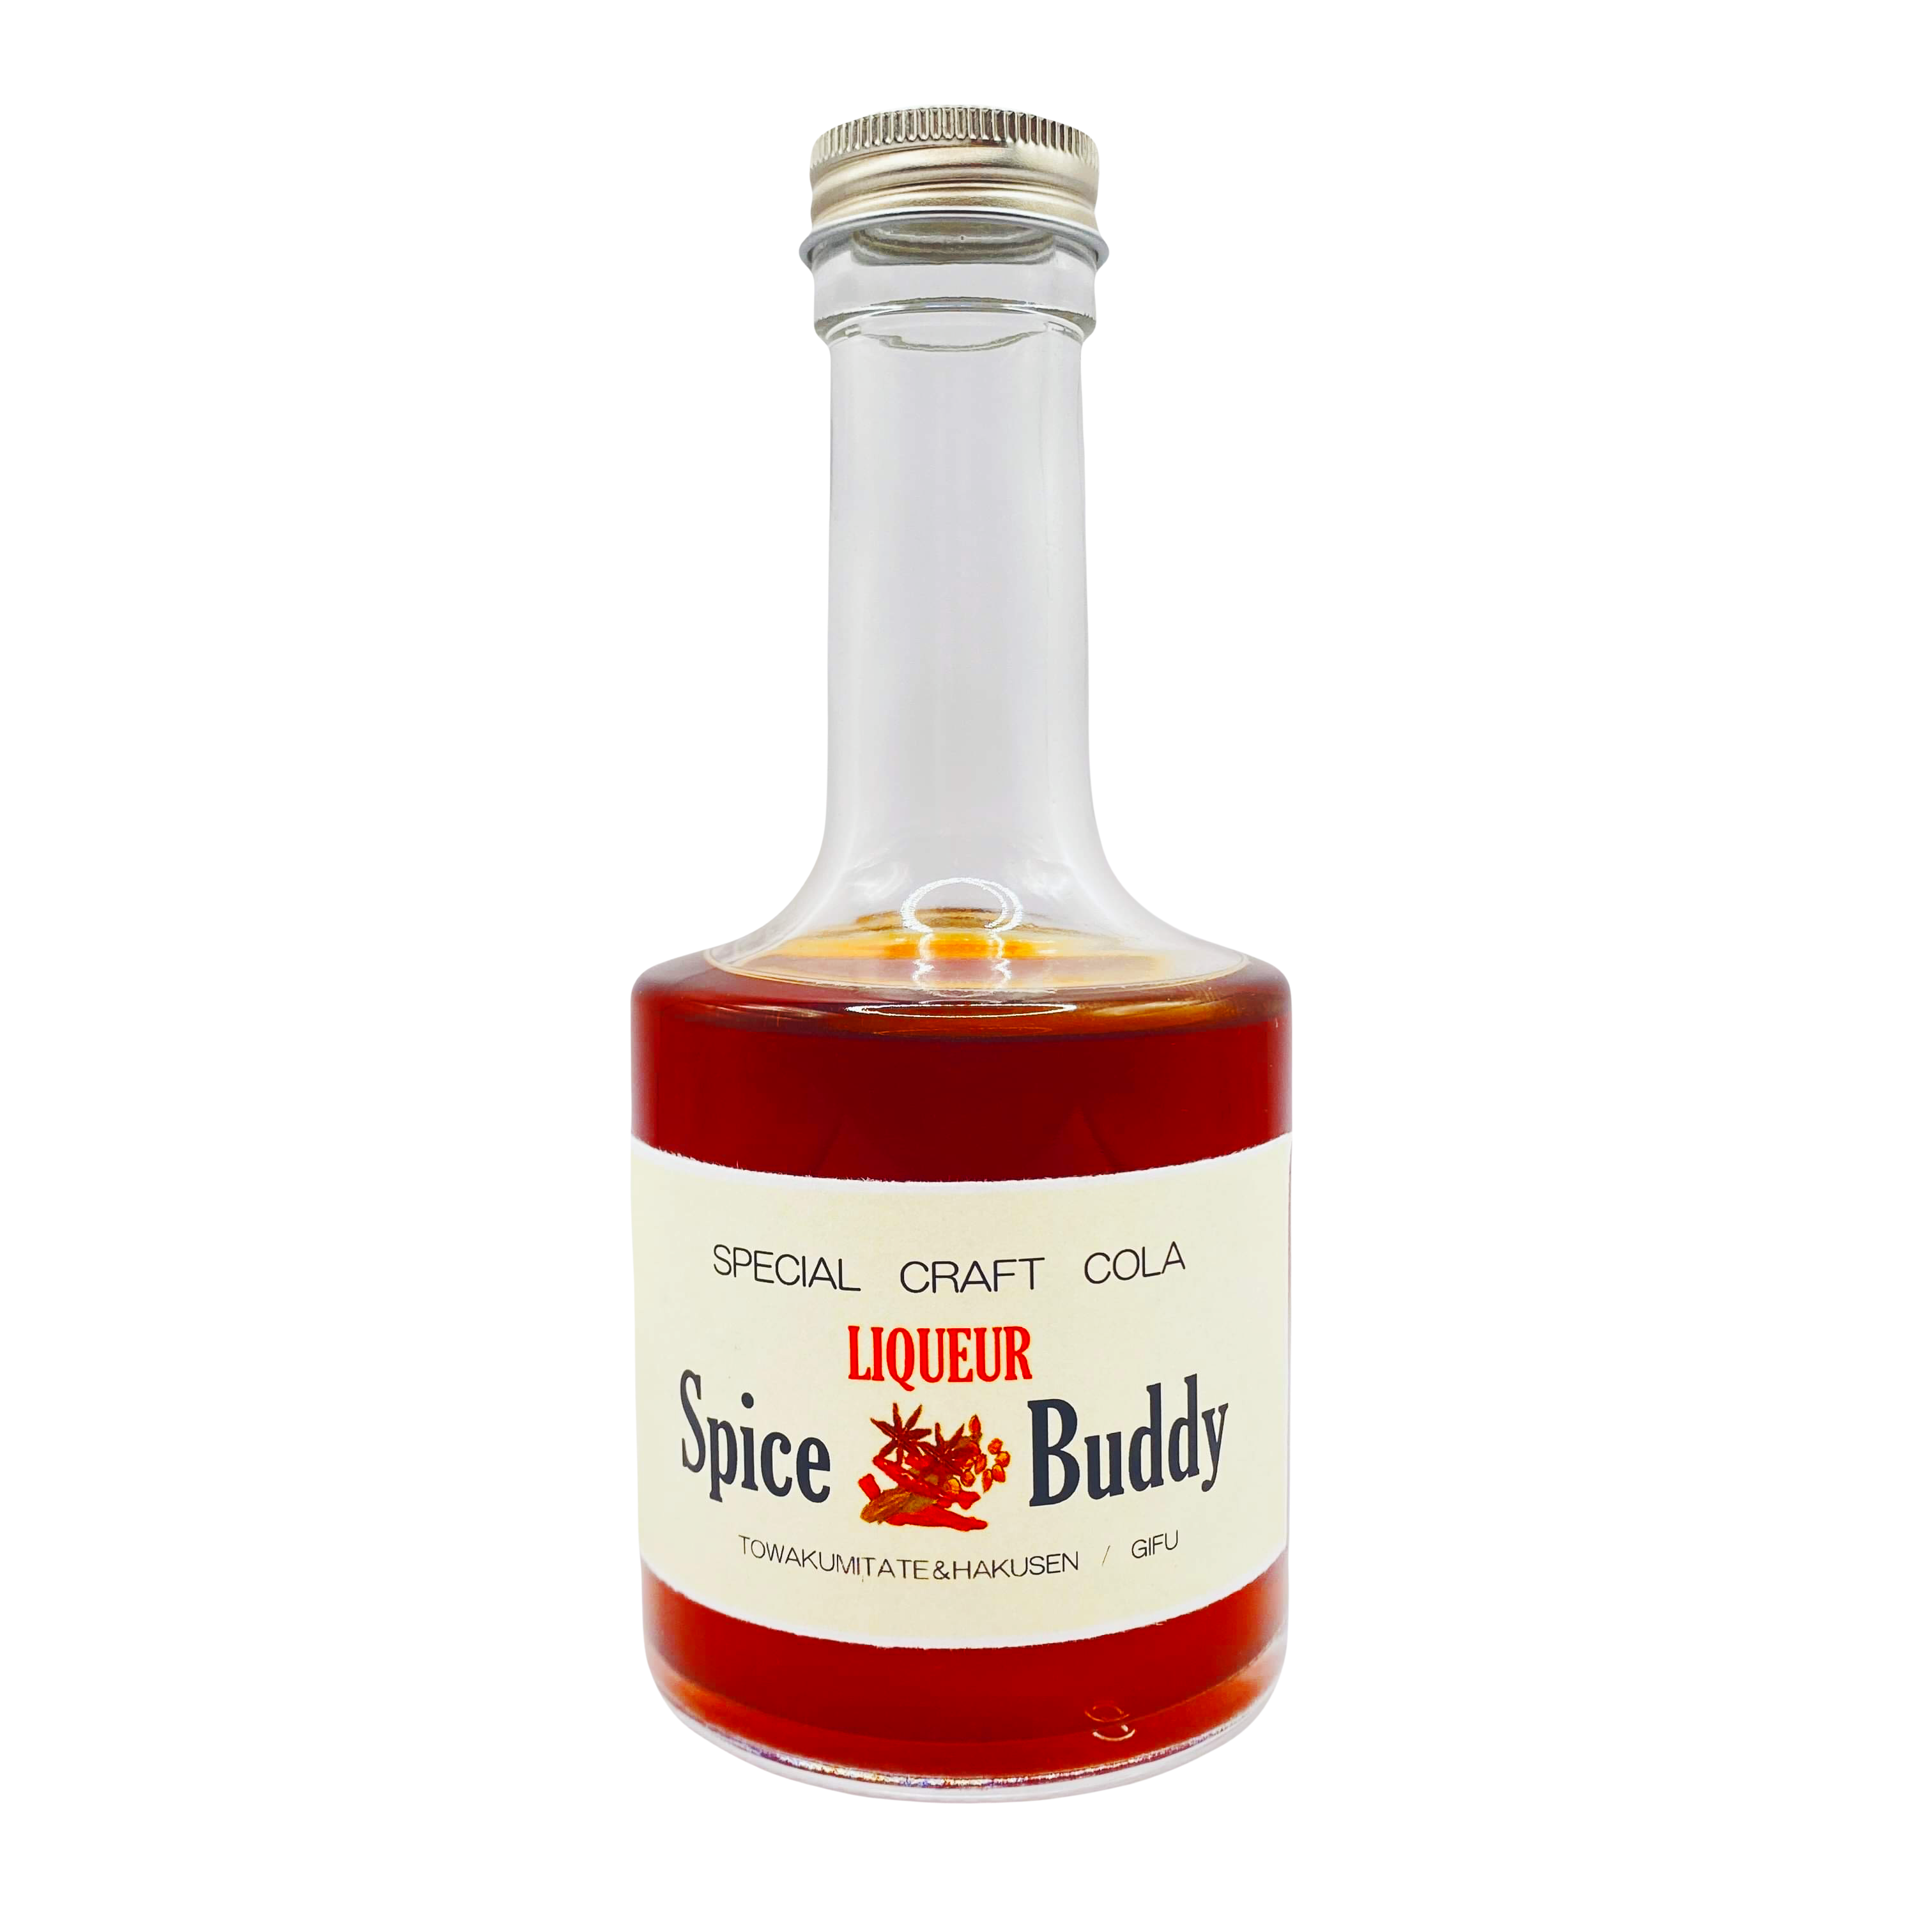 「Spice Buddy」という名前の無添加のクラフトリキュールは、岐阜県産の米を使用した焼酎にクラフトコーラのスパイスを漬け込んで作られています。このリキュールは、地元の白扇酒造とのコラボレーションで生まれ、その名前も由来しています。  「スパイスバディ」はフェアトレードコーラの14種類の天然素材スパイスを贅沢に使用し、歴史ある伝統的製法で作られ、職人技が活かされています。また、アレルギー反応が心配な方でも安心して飲むことができます。  このリキュールのアルコール度数は40度で、クラフトコーラのスパイスの香りと味わいはピリッと辛く、スパイシーです。そのため、料理との相性も抜群です。飲み方は、炭酸で割ったり、ストレートで飲むこともできます。また、アイスクリームや、かき氷のデザートのレシピにも使うことができ、美味しい味わいを楽しむことができます。  「Spice Buddy」は高級感があり、おしゃれな見た目も特徴です。特別な日のギフトとしてもおすすめです。うまい 満足 おいしい 映えちゃう 人気　痺 岐阜放送 岐阜新聞 中日新聞